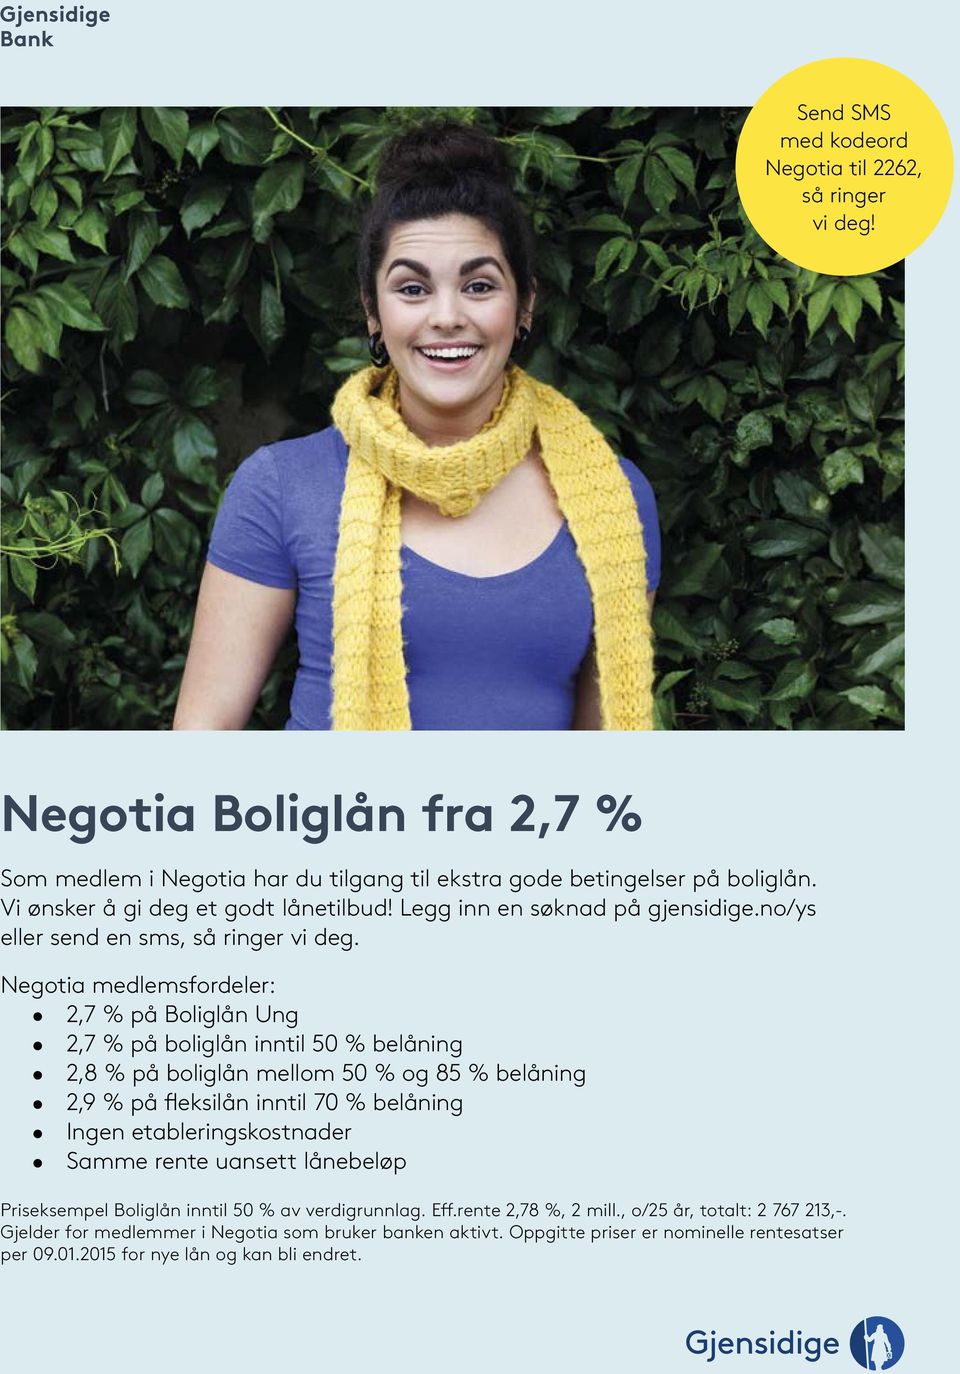 Negotia medlemsfordeler: 2,7 % på Boliglån Ung 2,7 % på boliglån inntil 50 % belåning 2,8 % på boliglån mellom 50 % og 85 % belåning 2,9 % på fleksilån inntil 70 % belåning Ingen